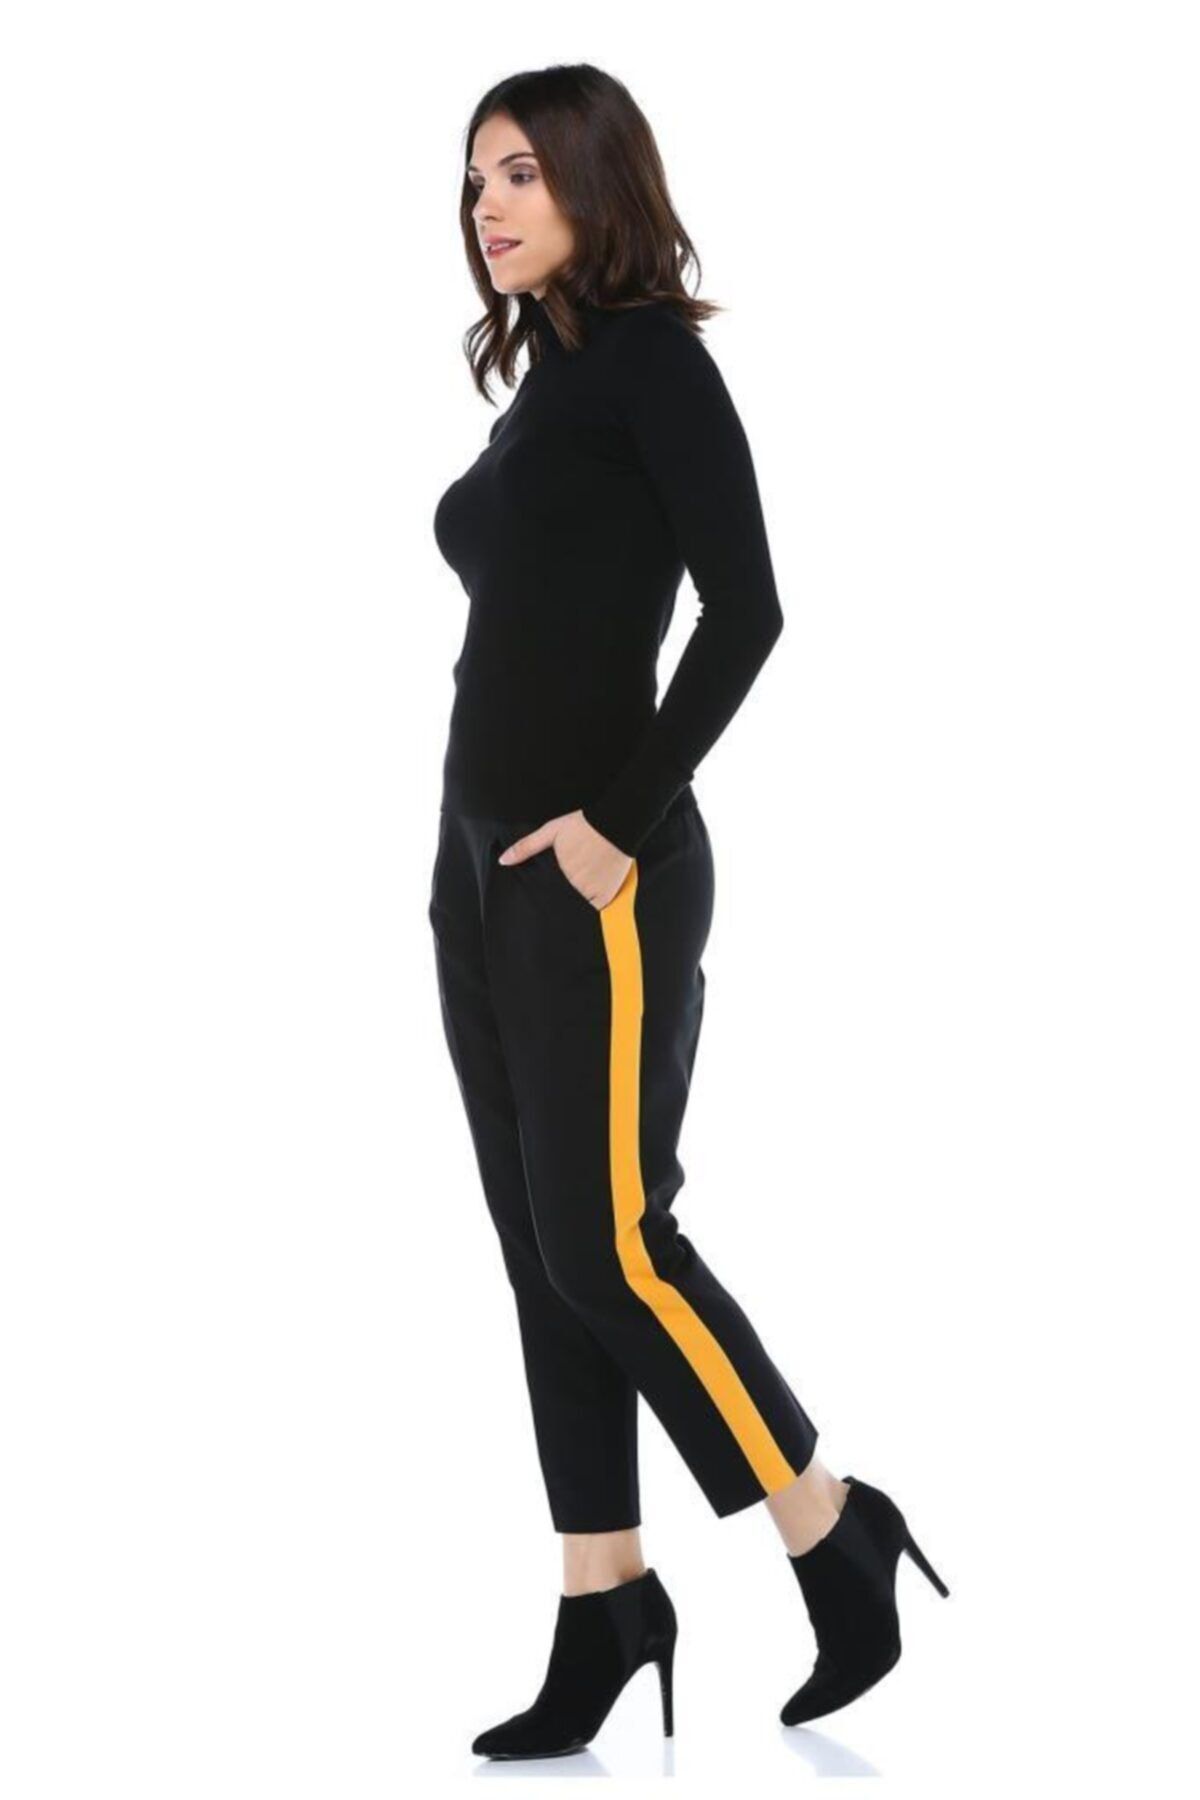 Modkofoni Sarı Şeritli Siyah Bilek Kadın Pantolon